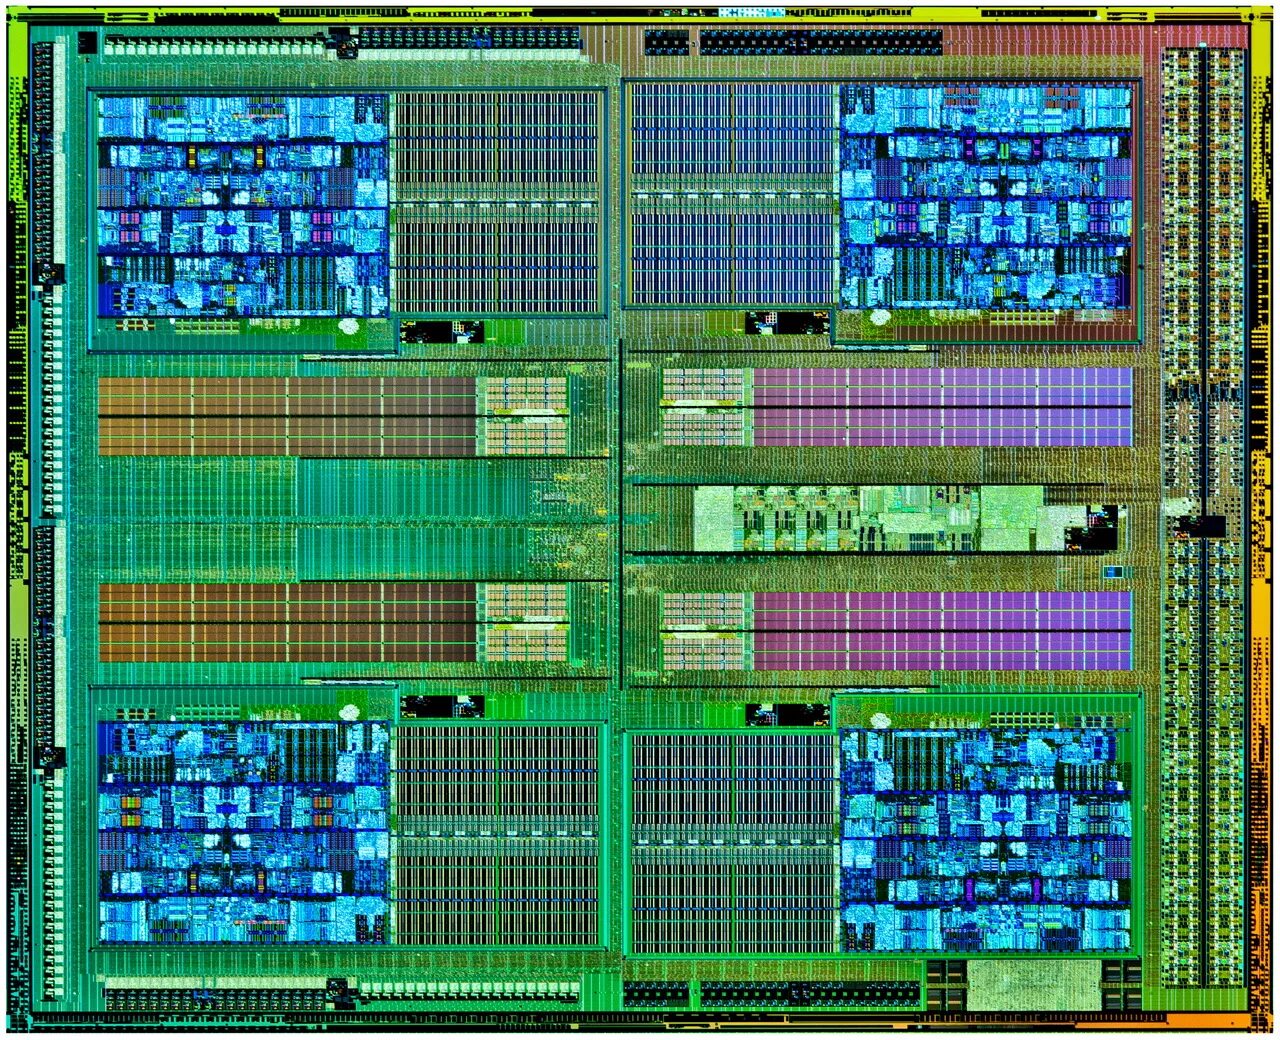 FX 6300 процессор архитектура. 5 НМ техпроцесс. АМД ФХ техпроцесс. Ядро процессора: Vishera.